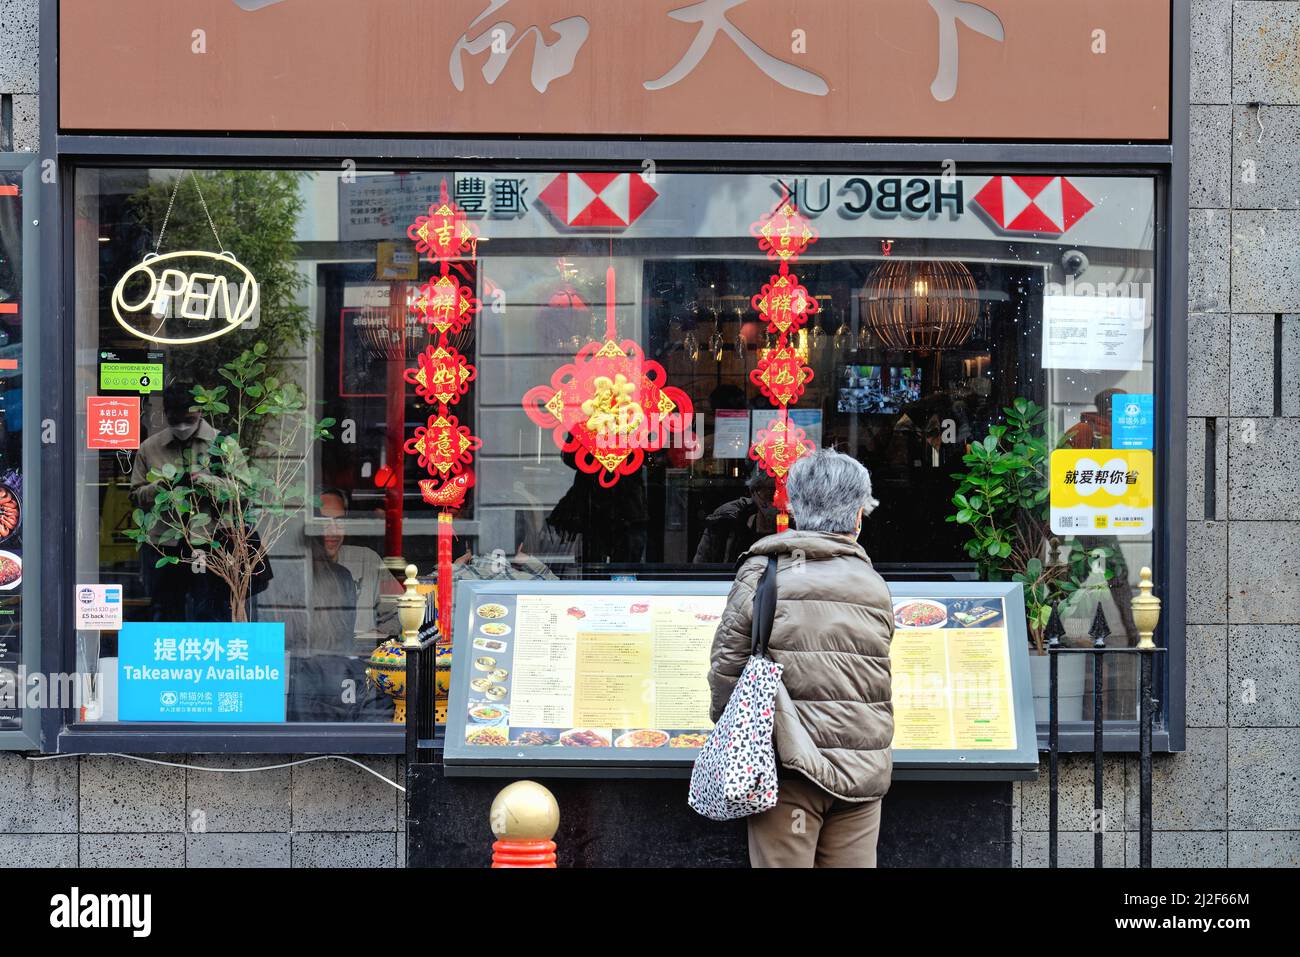 Vue arrière d'une femme mûre aux cheveux gris qui regarde un menu à l'extérieur d'un restaurant chinois sur Gerrard Street Chinatown Central London England UK Banque D'Images